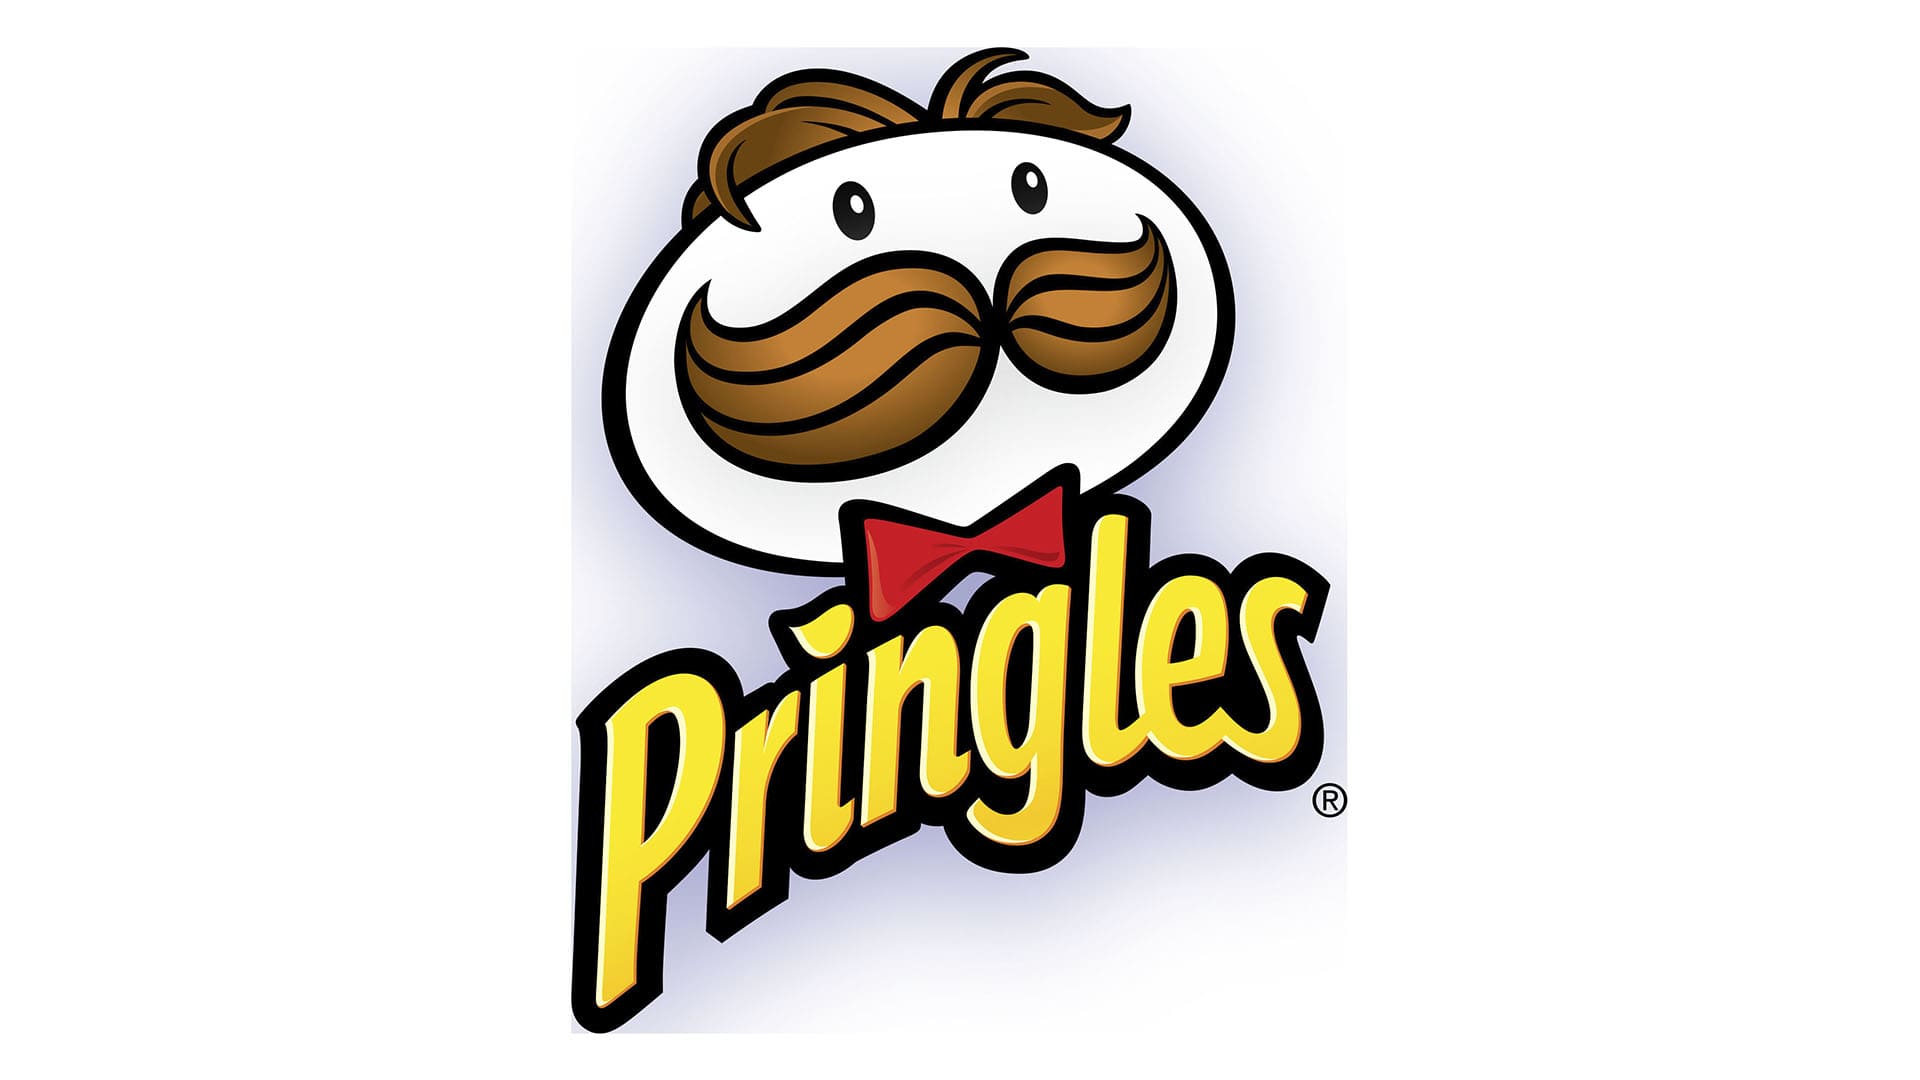 Pringles Logo - Logo, zeichen, emblem, symbol. Geschichte und Bedeutung